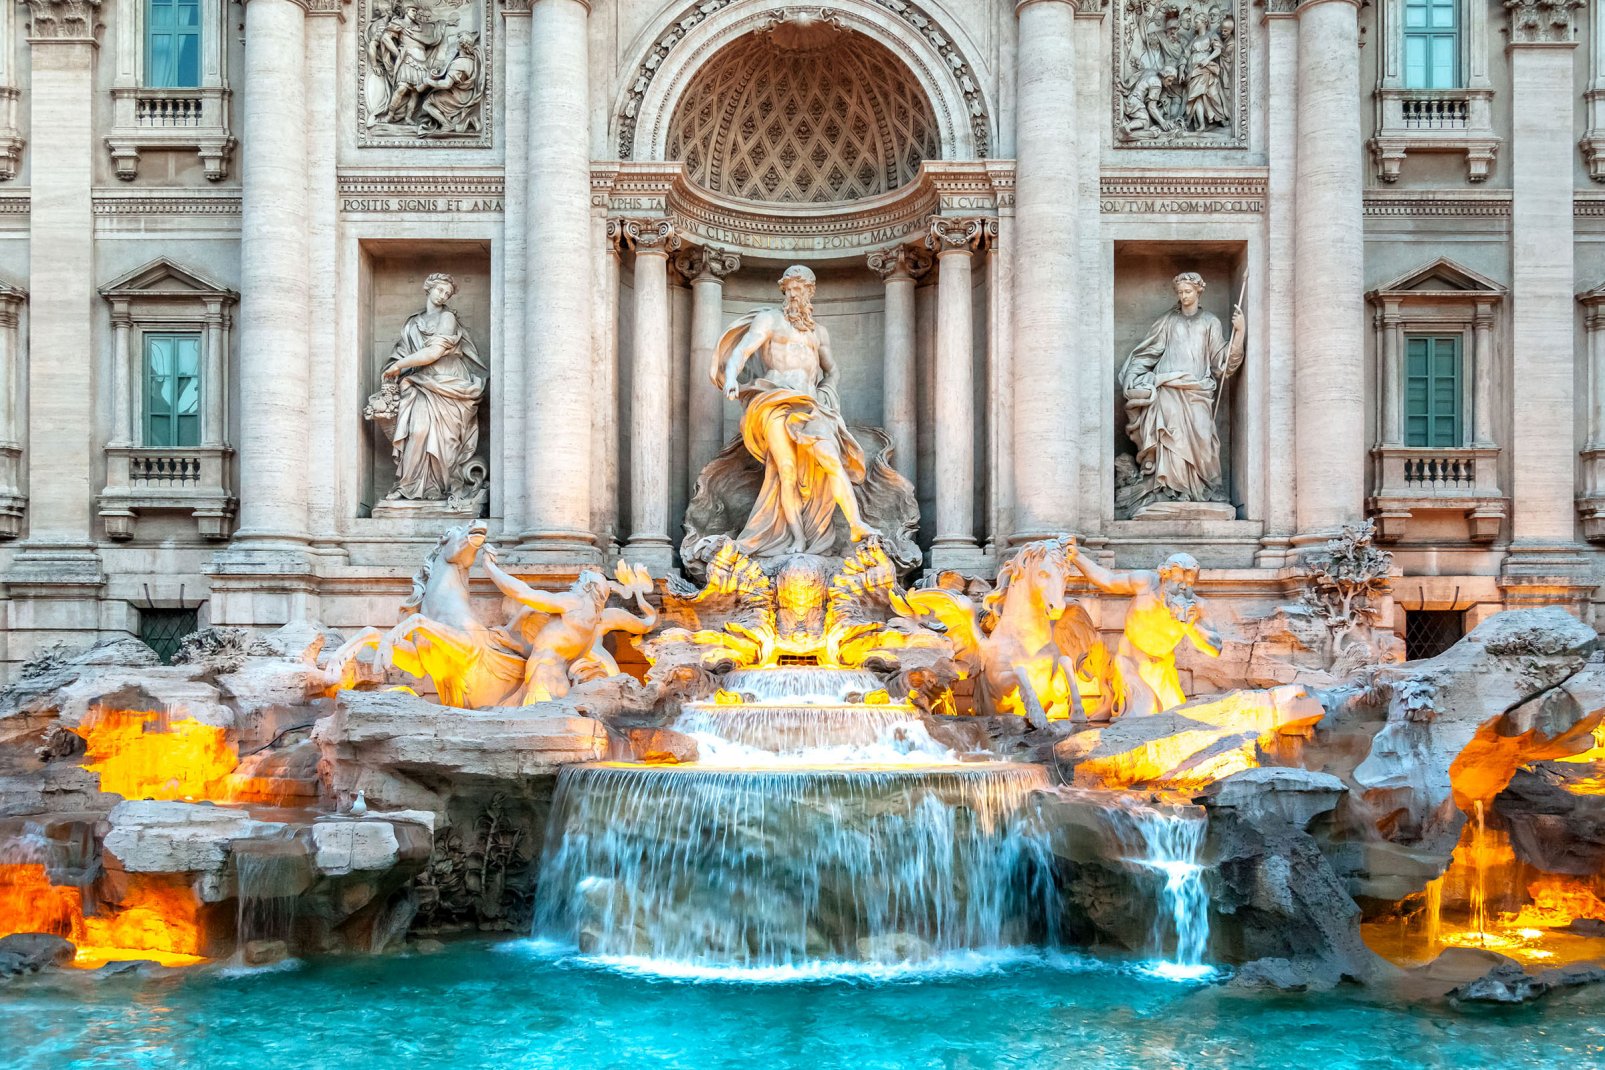 Plus grande fontaine de Rome, la foisonnante fontaine de Trévi, du plus beau style baroque, est adossée au palais Poli et fait jaillir l'eau de l'aqueduc de l'Aqua Virgo, sur la place de Trévi.